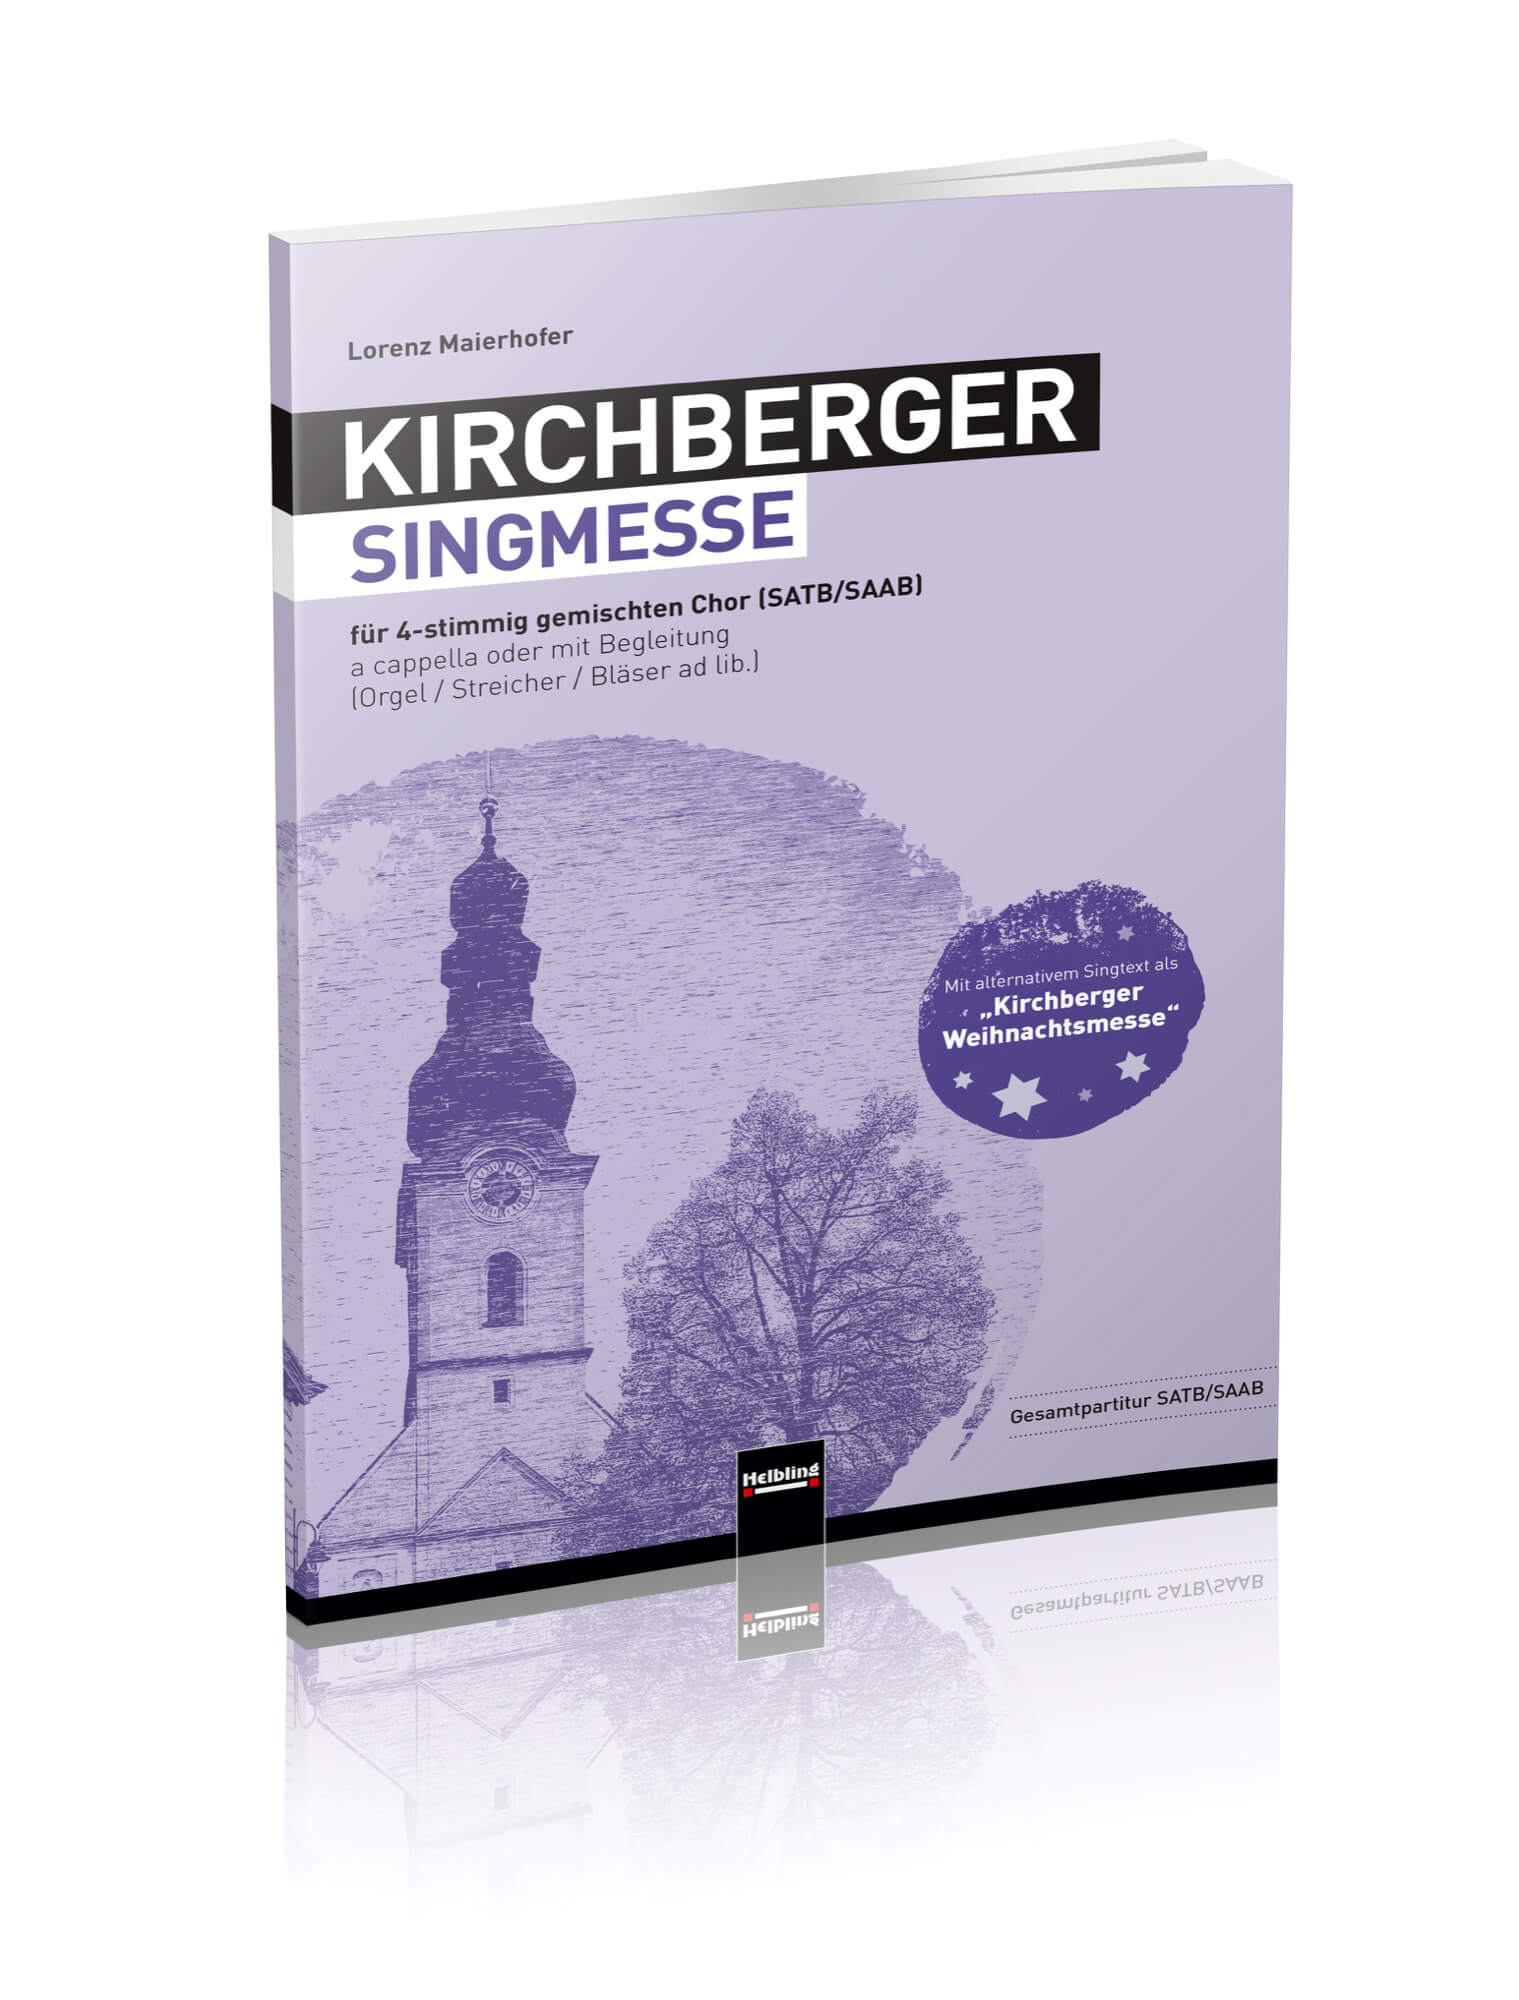 ▸ KIRCHBERGER SINGMESSE / KIRCHBERGER WEIHNACHTSMESSE